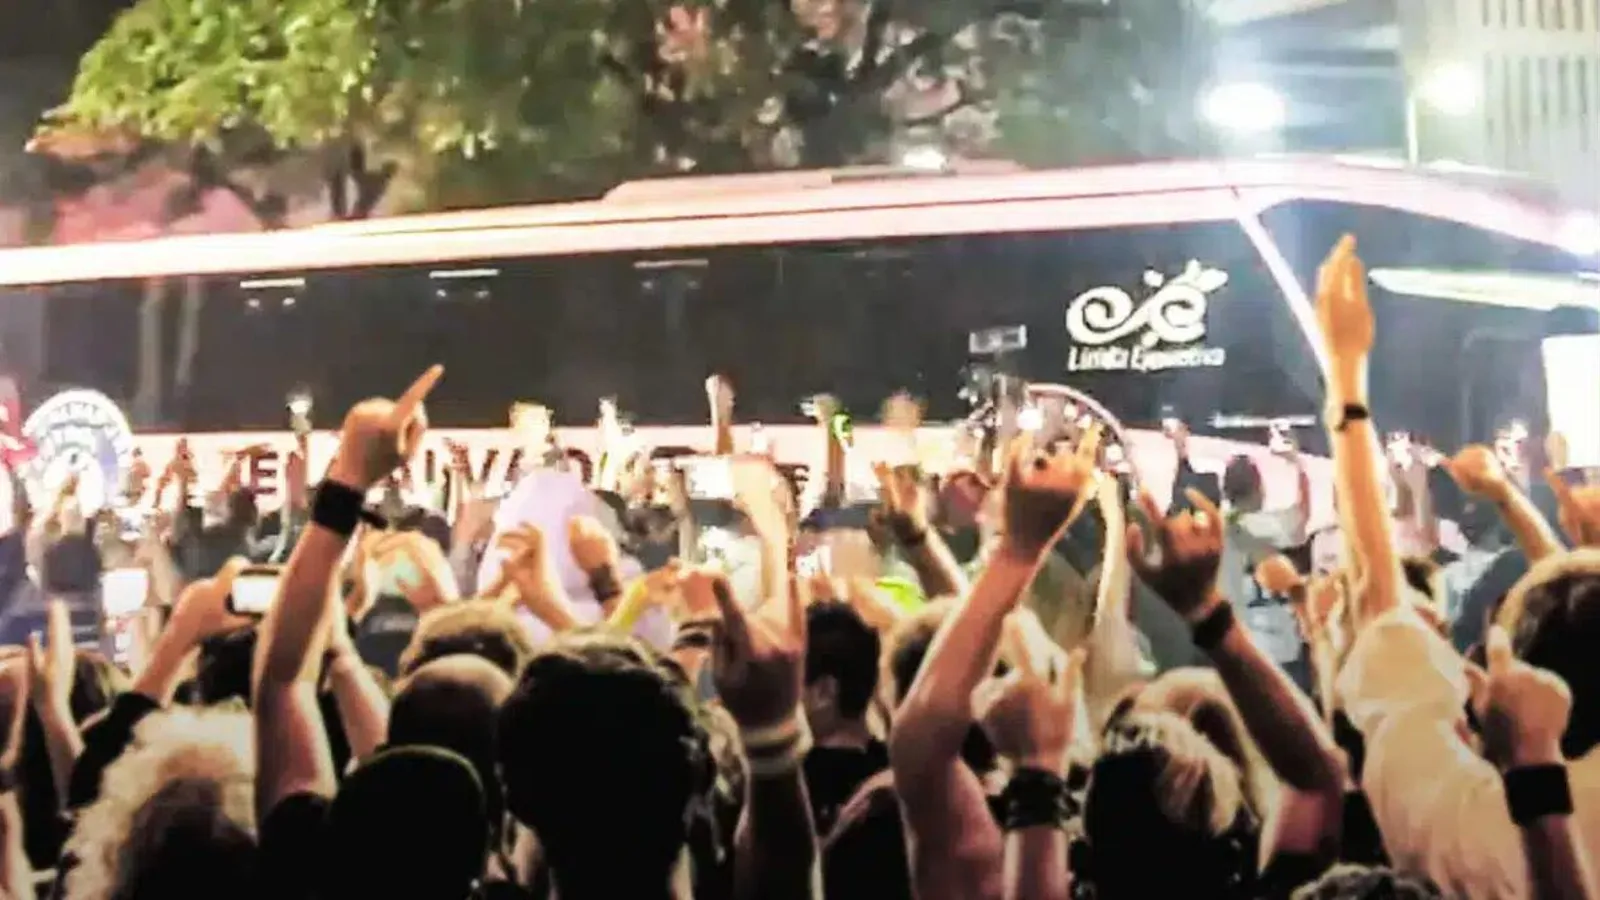 Lionel Messi, Inter Miami team bus gets mobbed by fans ahead of El Salvador showdown